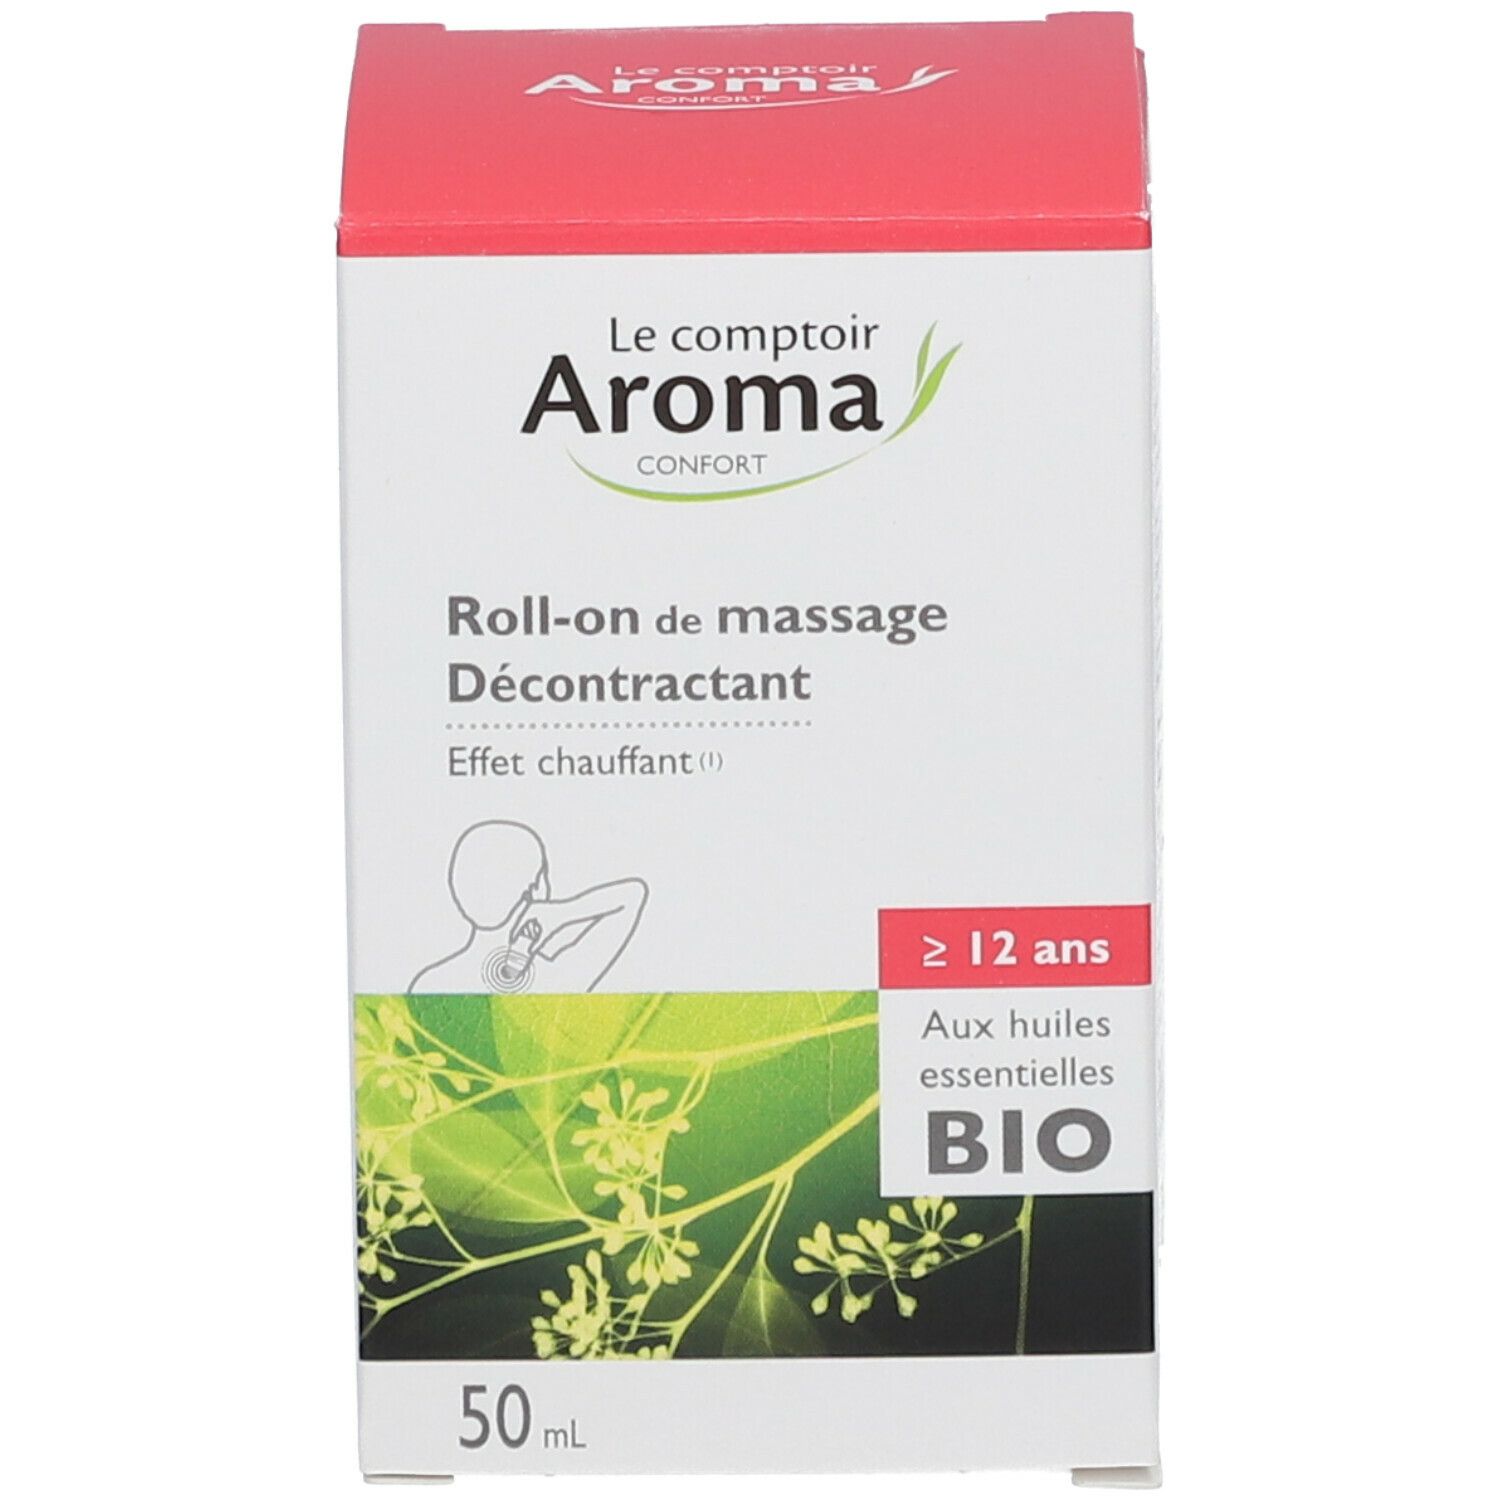 Roll-On fraîcheur aux huiles essentielles bio Maux de tête Le comptoire  Aroma pour un massage express local